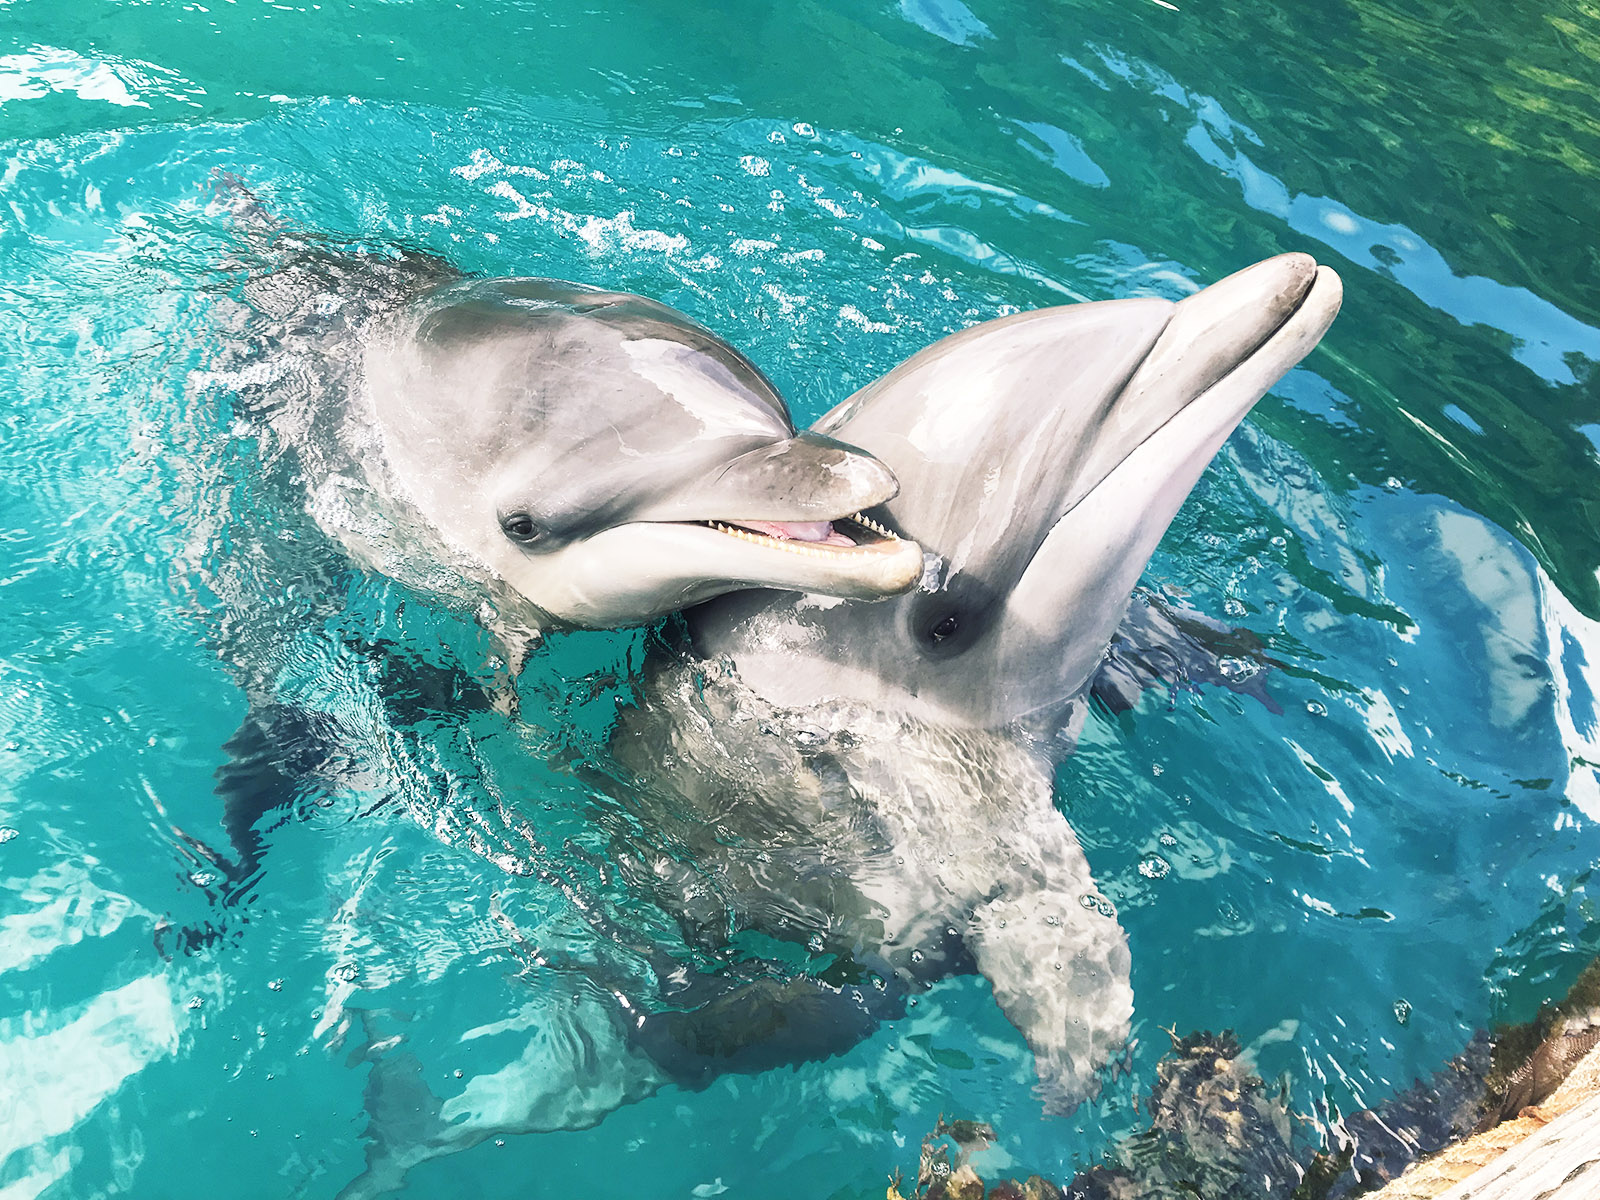 ドルフィンズ パシフィックの観光ガイド イルカと触れあう体験ツアーの魅力 パラオタイムス Palau Times